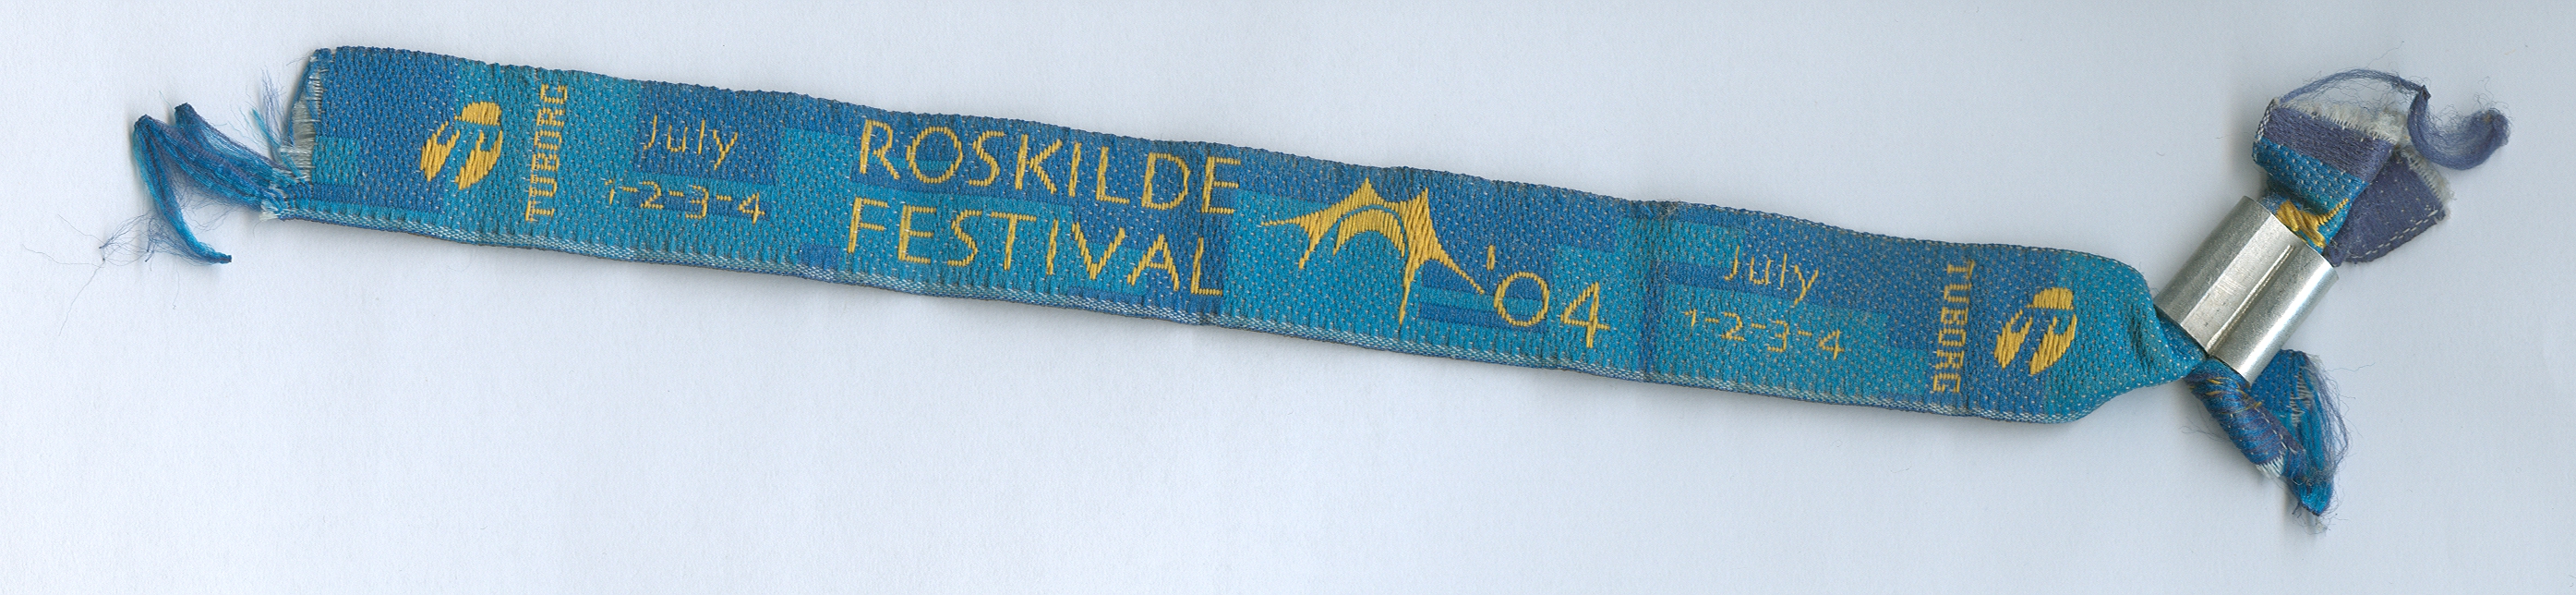 Die Eintrittskarte für das Roskilde-Festival 2004. 1:1 eingescannt.